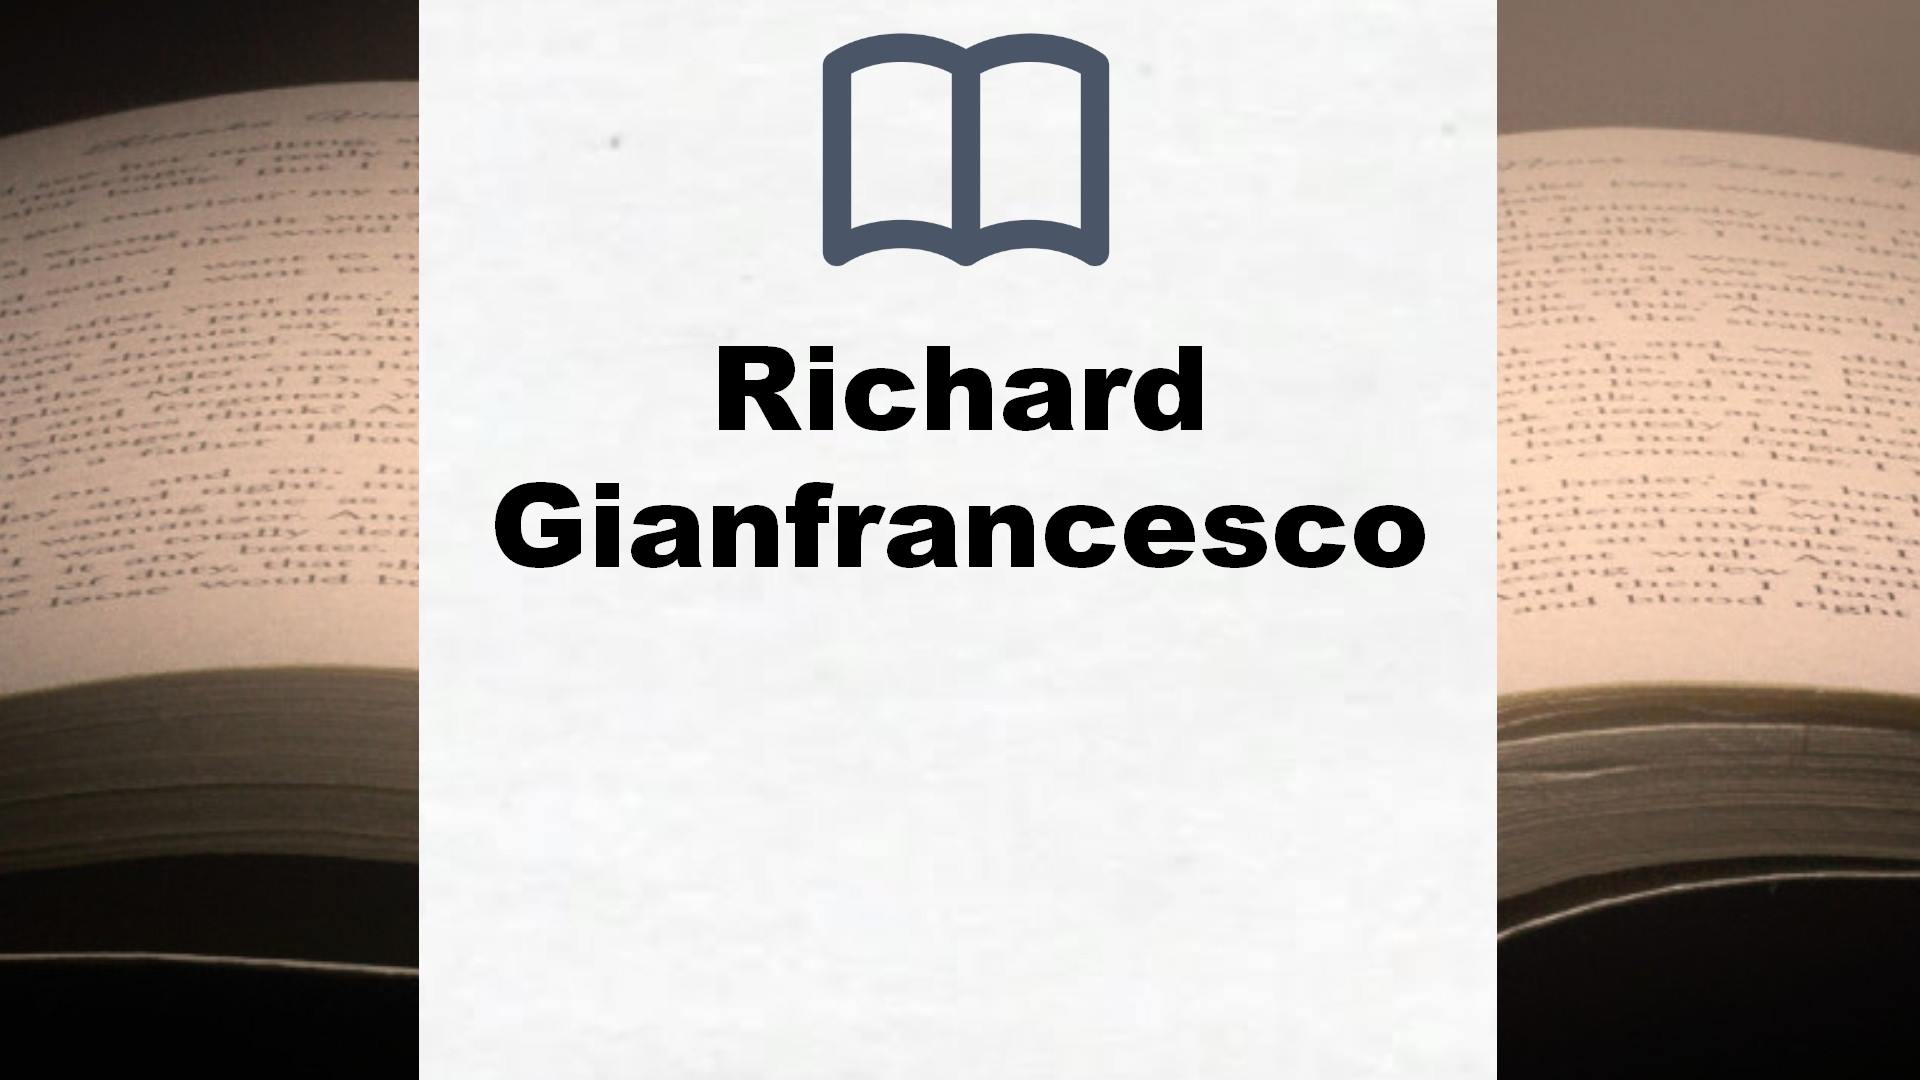 Libros Richard Gianfrancesco